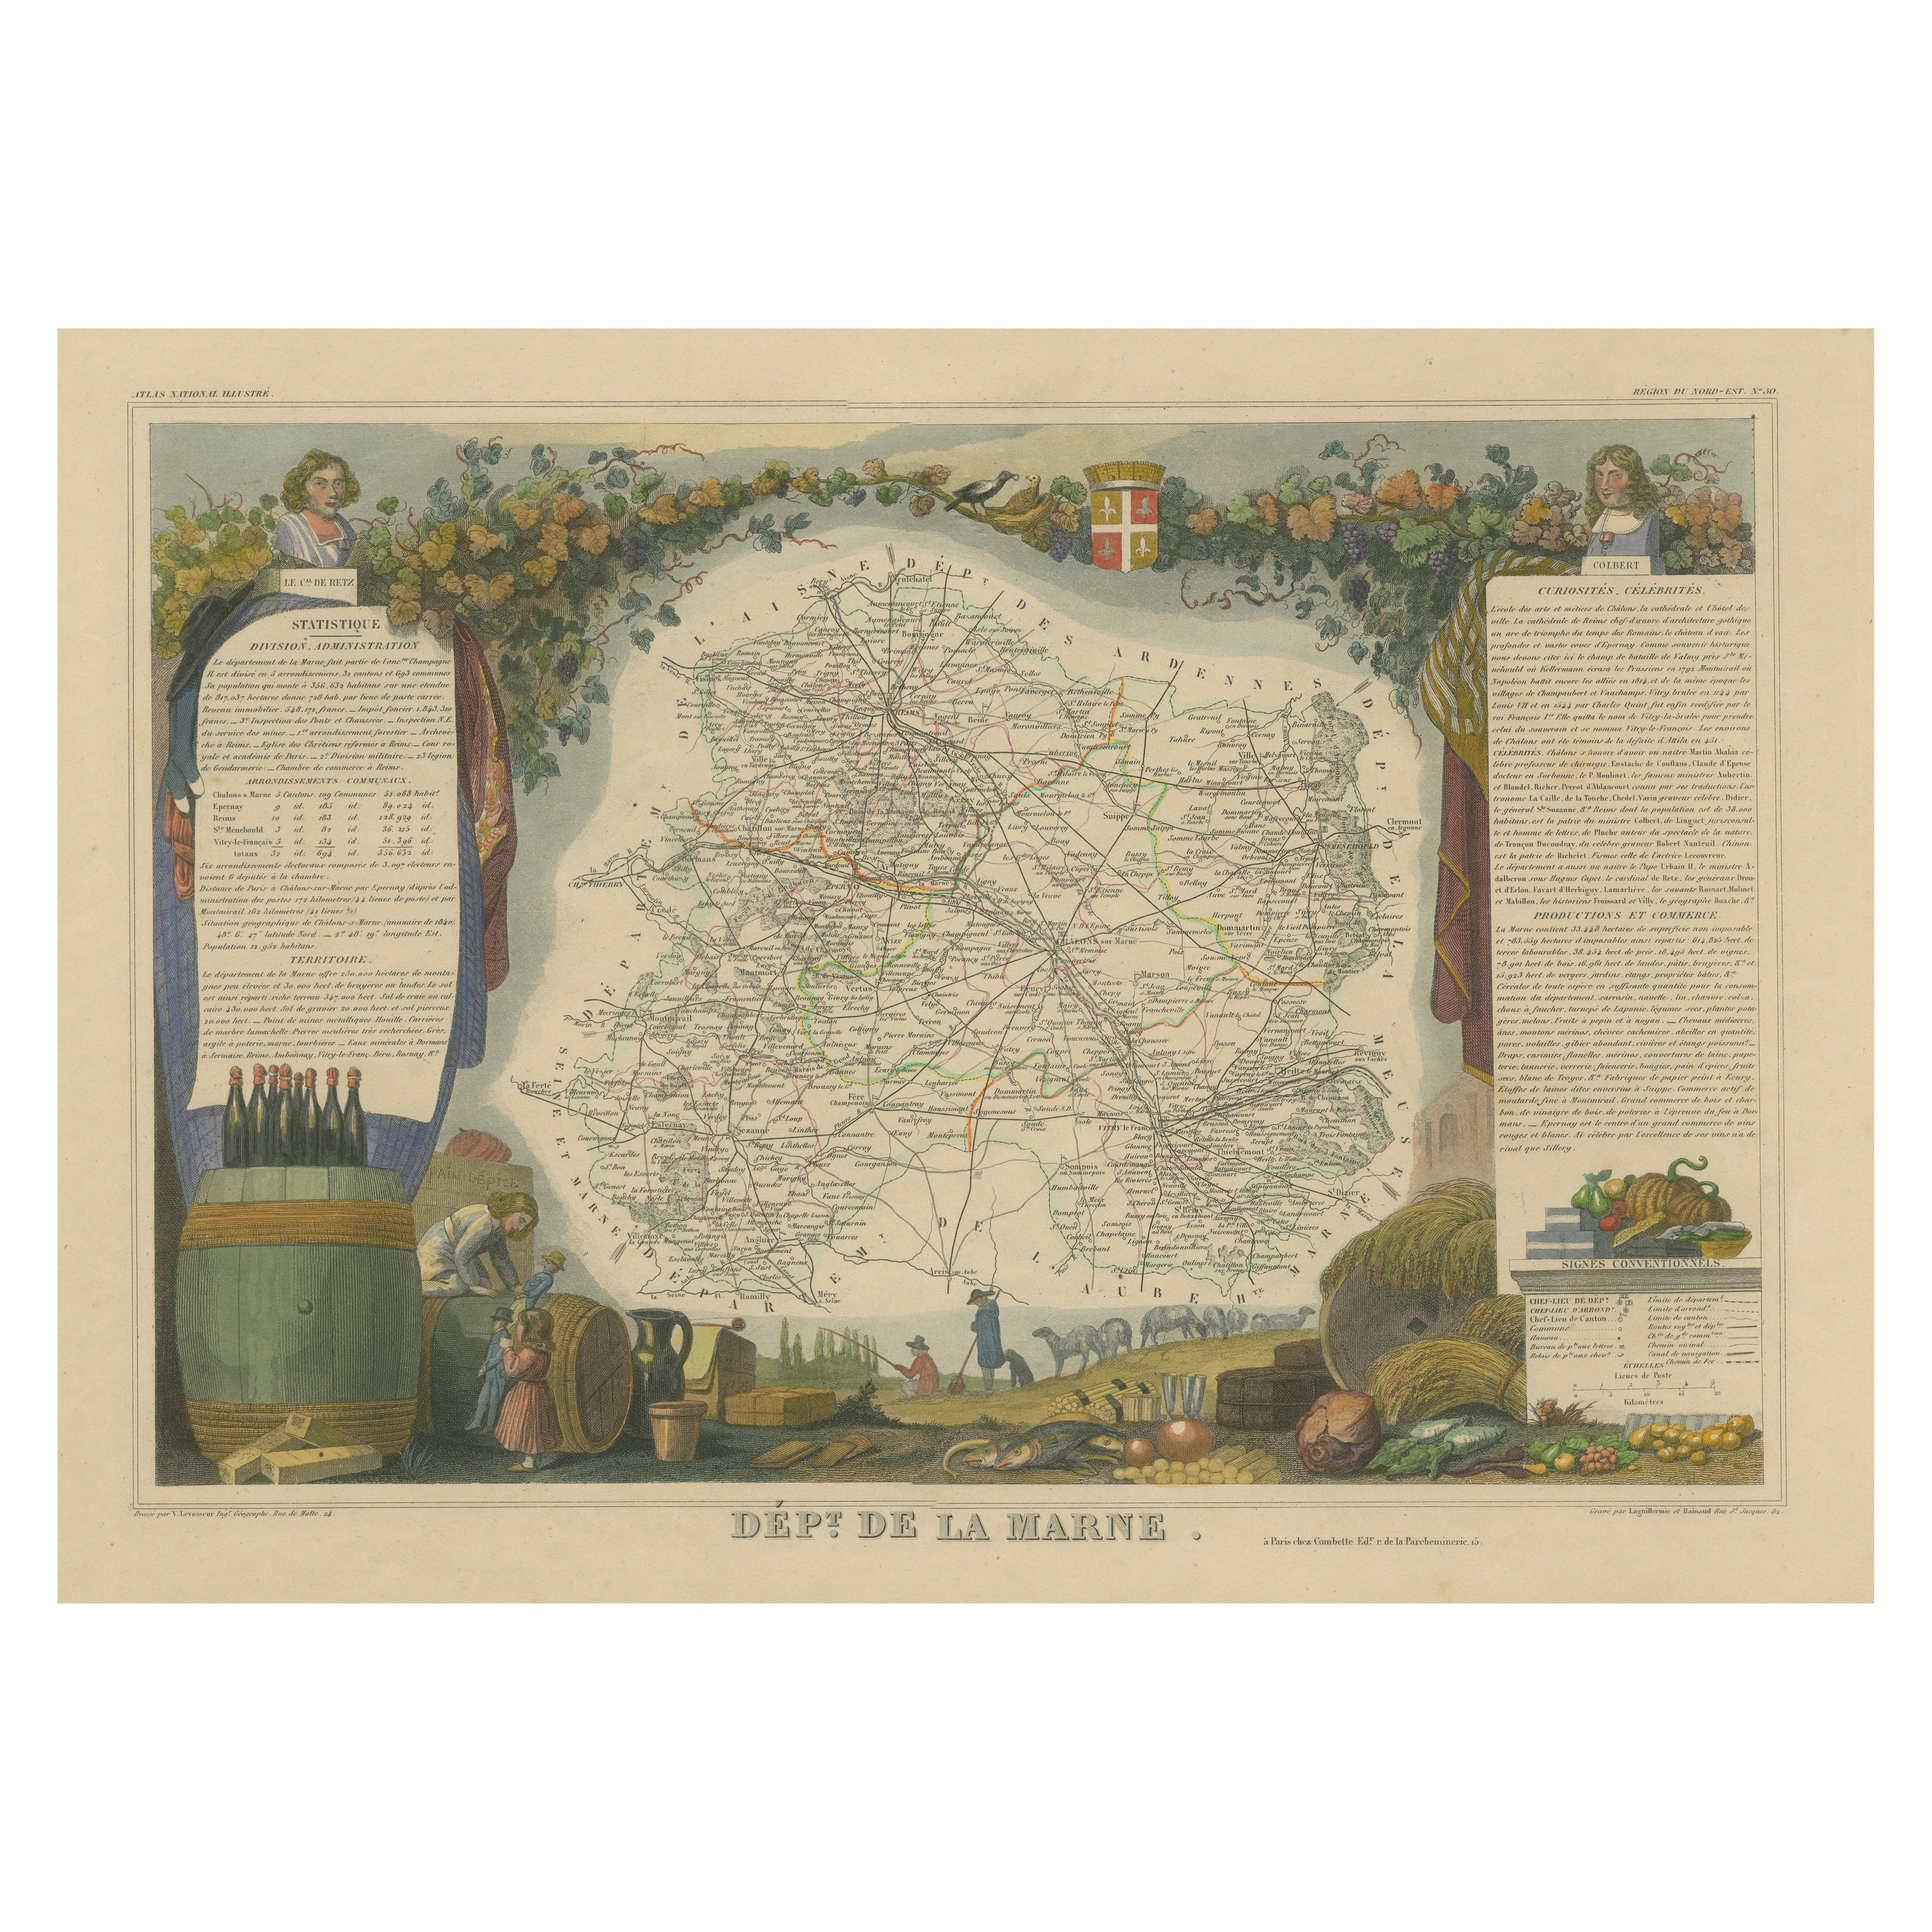 Handkolorierte antike Karte des Departements Marne, Frankreich